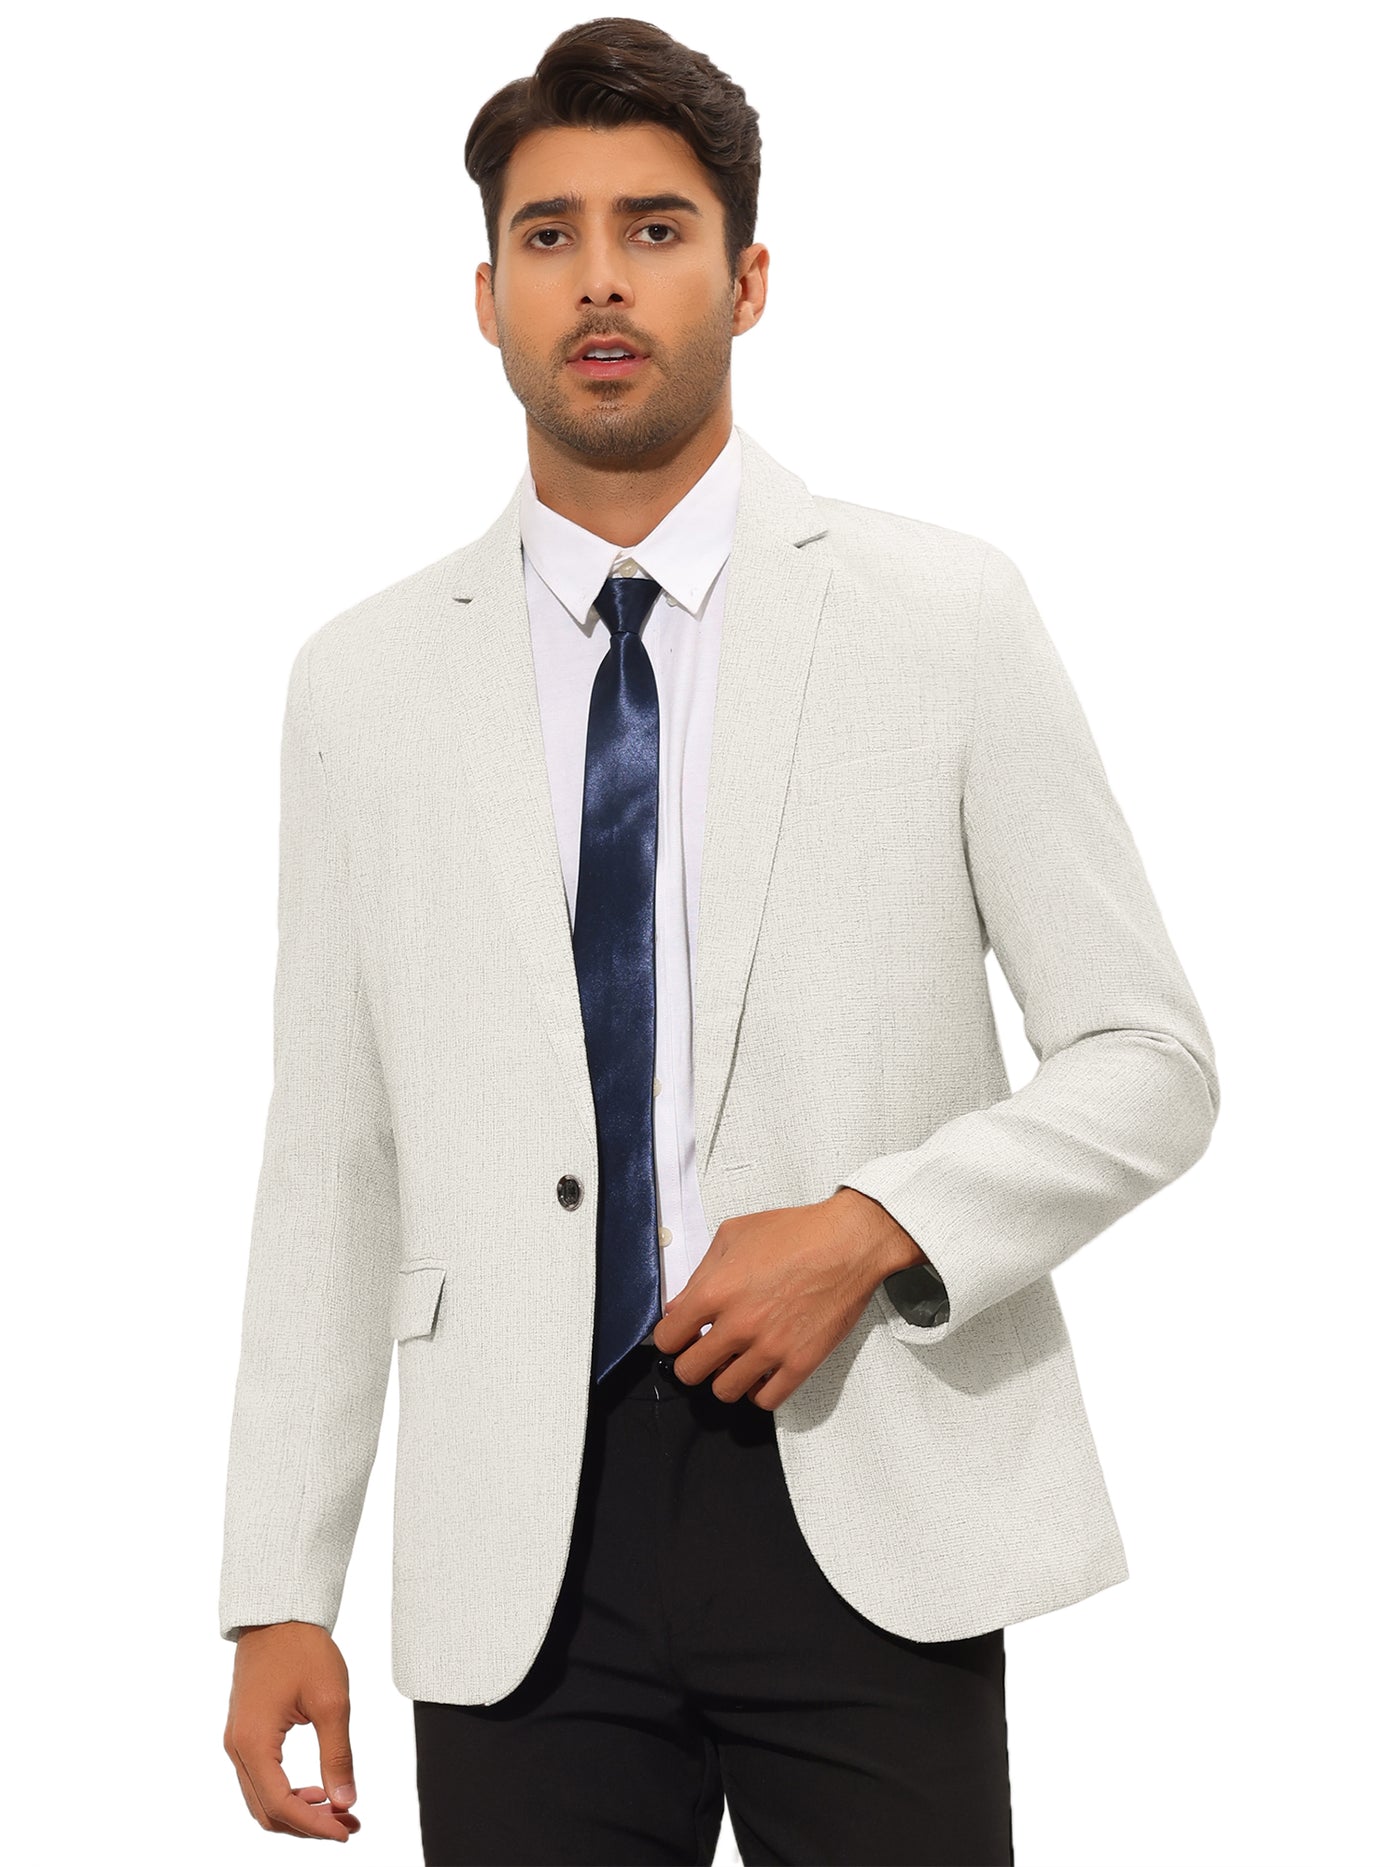 Bublédon Men's Blazer Slim Fit Notched Lapel Wedding Business Suit Jacket Sports Coat